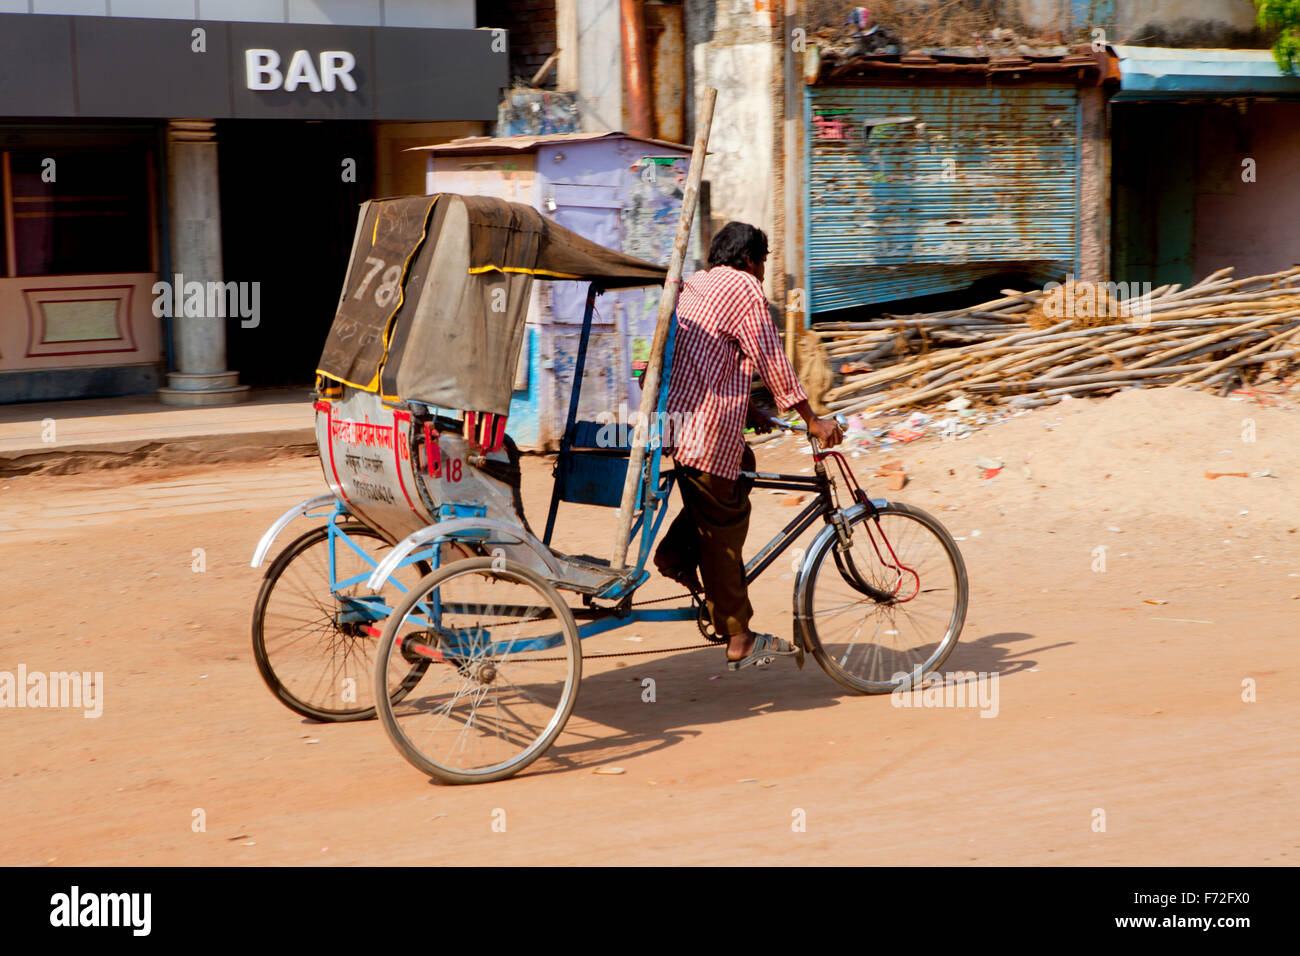 Mann, der Fahrrad-Rikscha, Dreirad-Rikscha, Bilaspur, Chhattisgarh, Indien, Asien Stockfoto